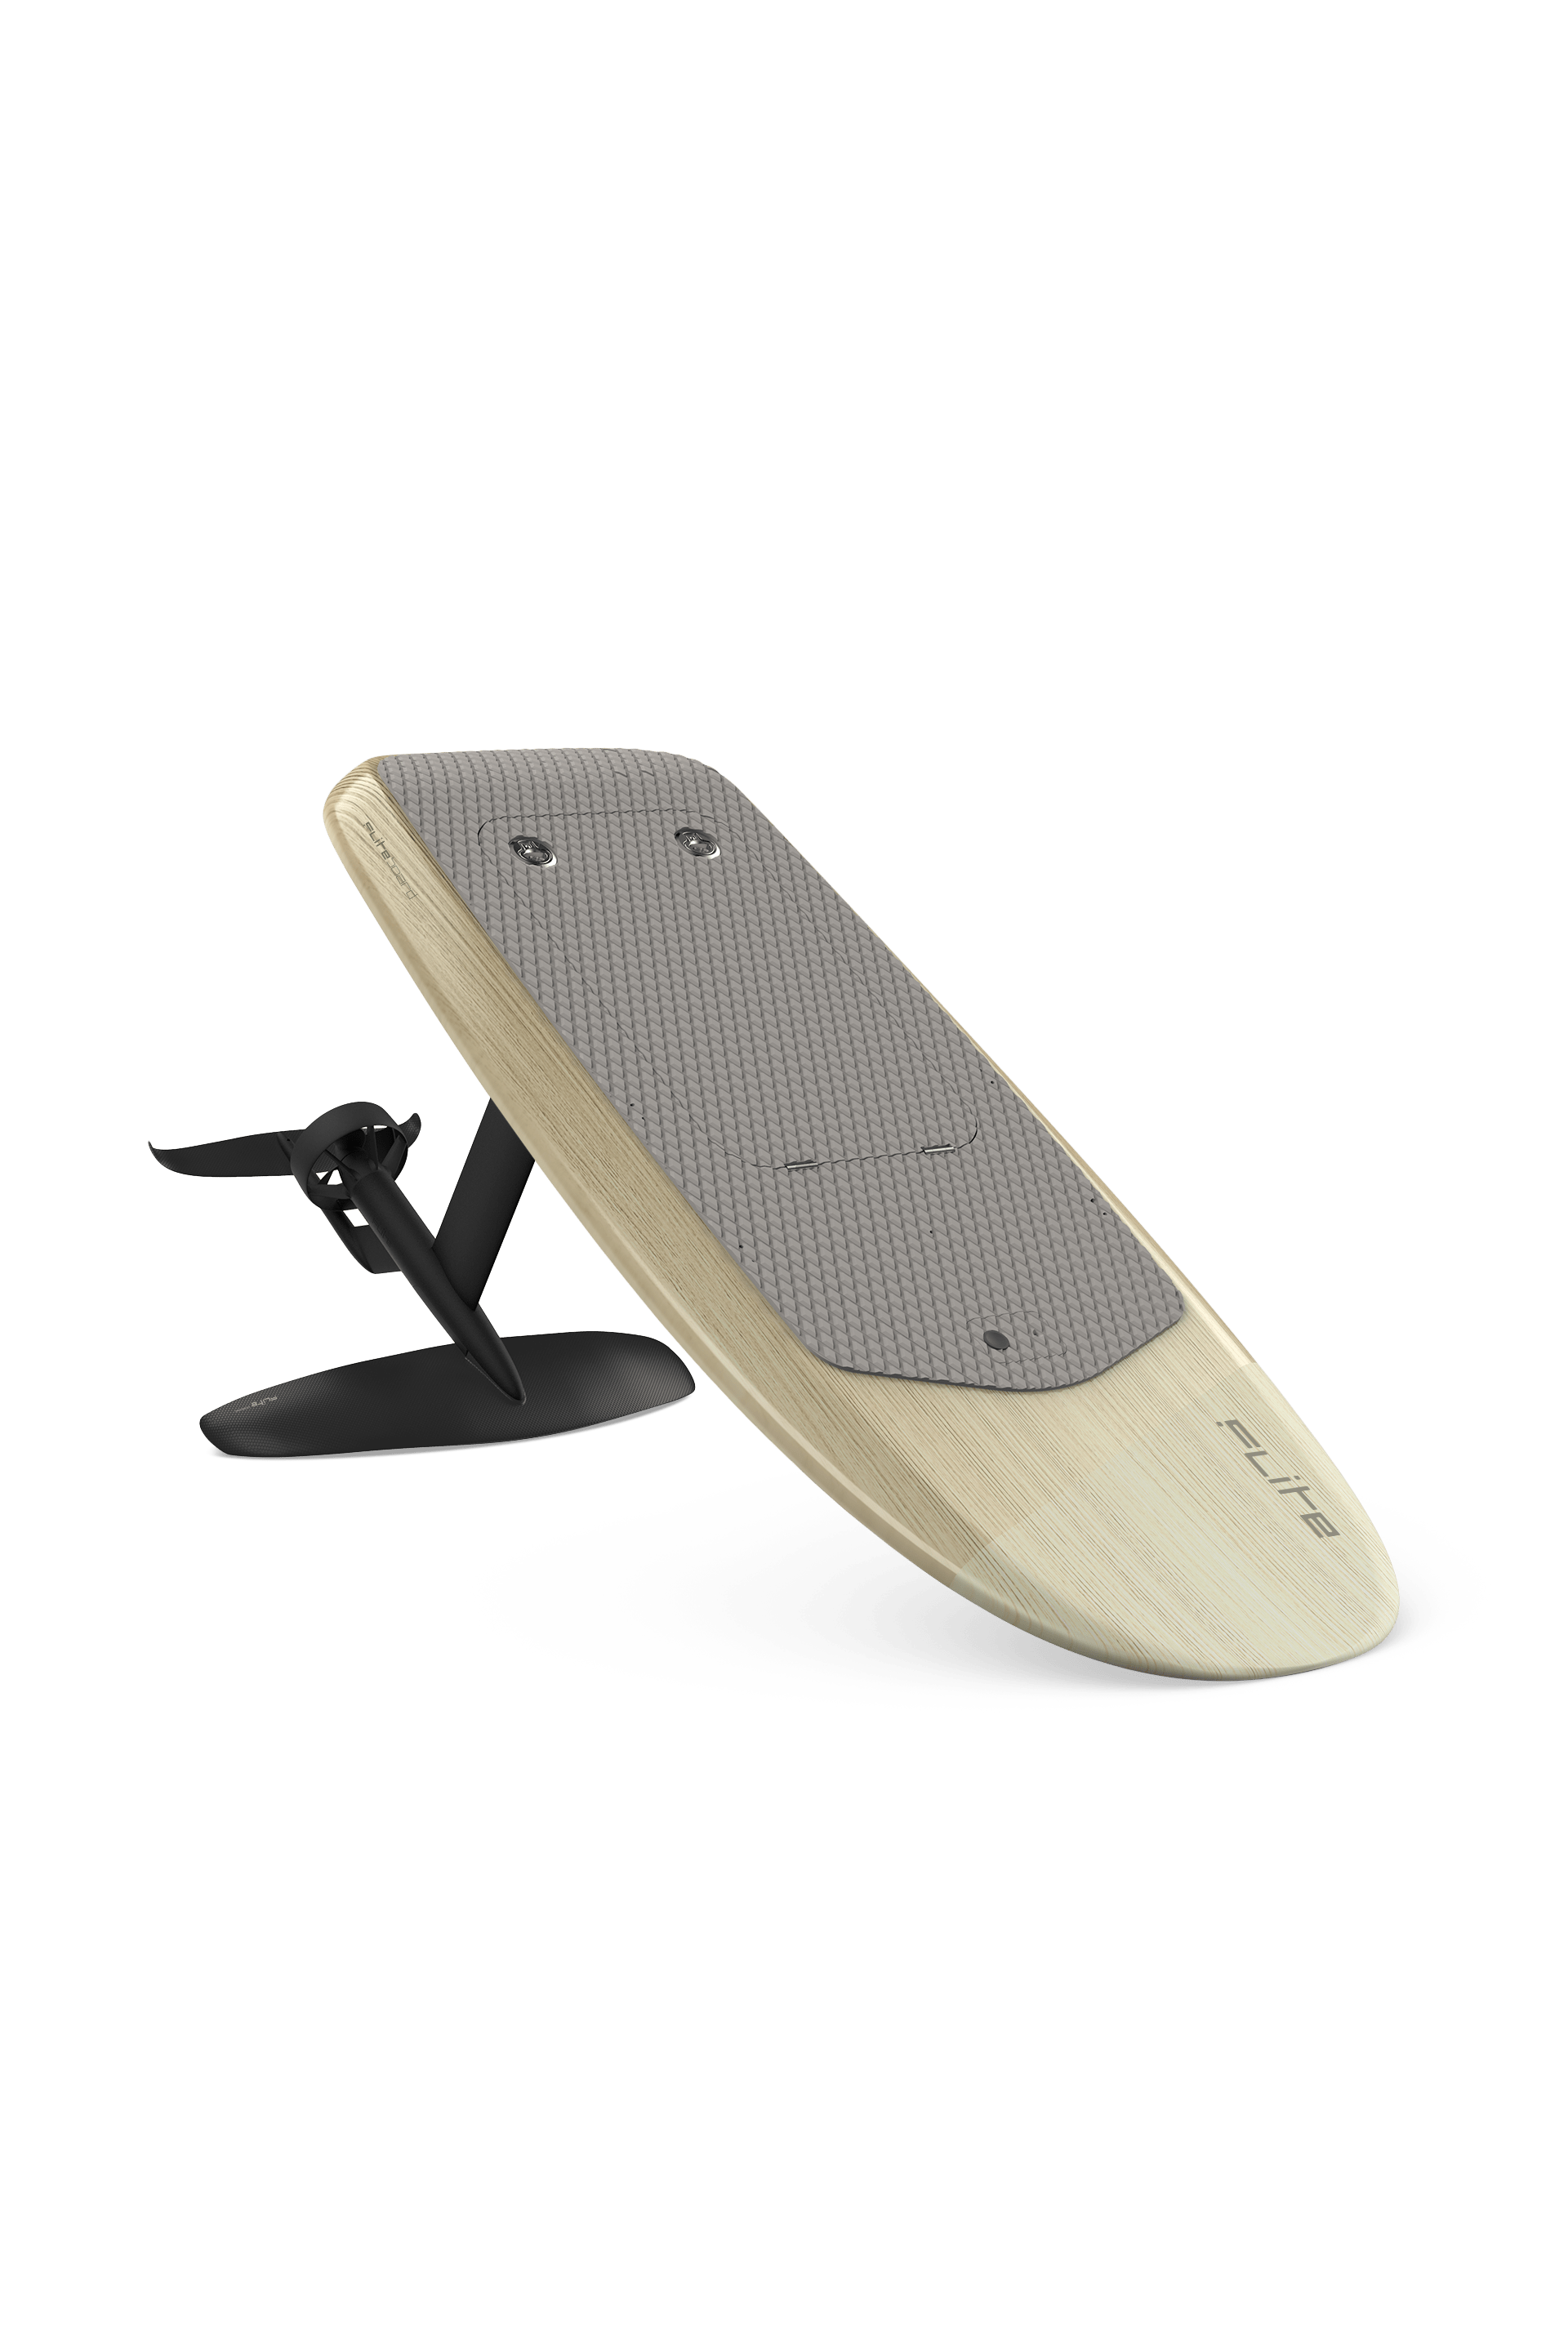 surf électrique à foil Fliteboard s